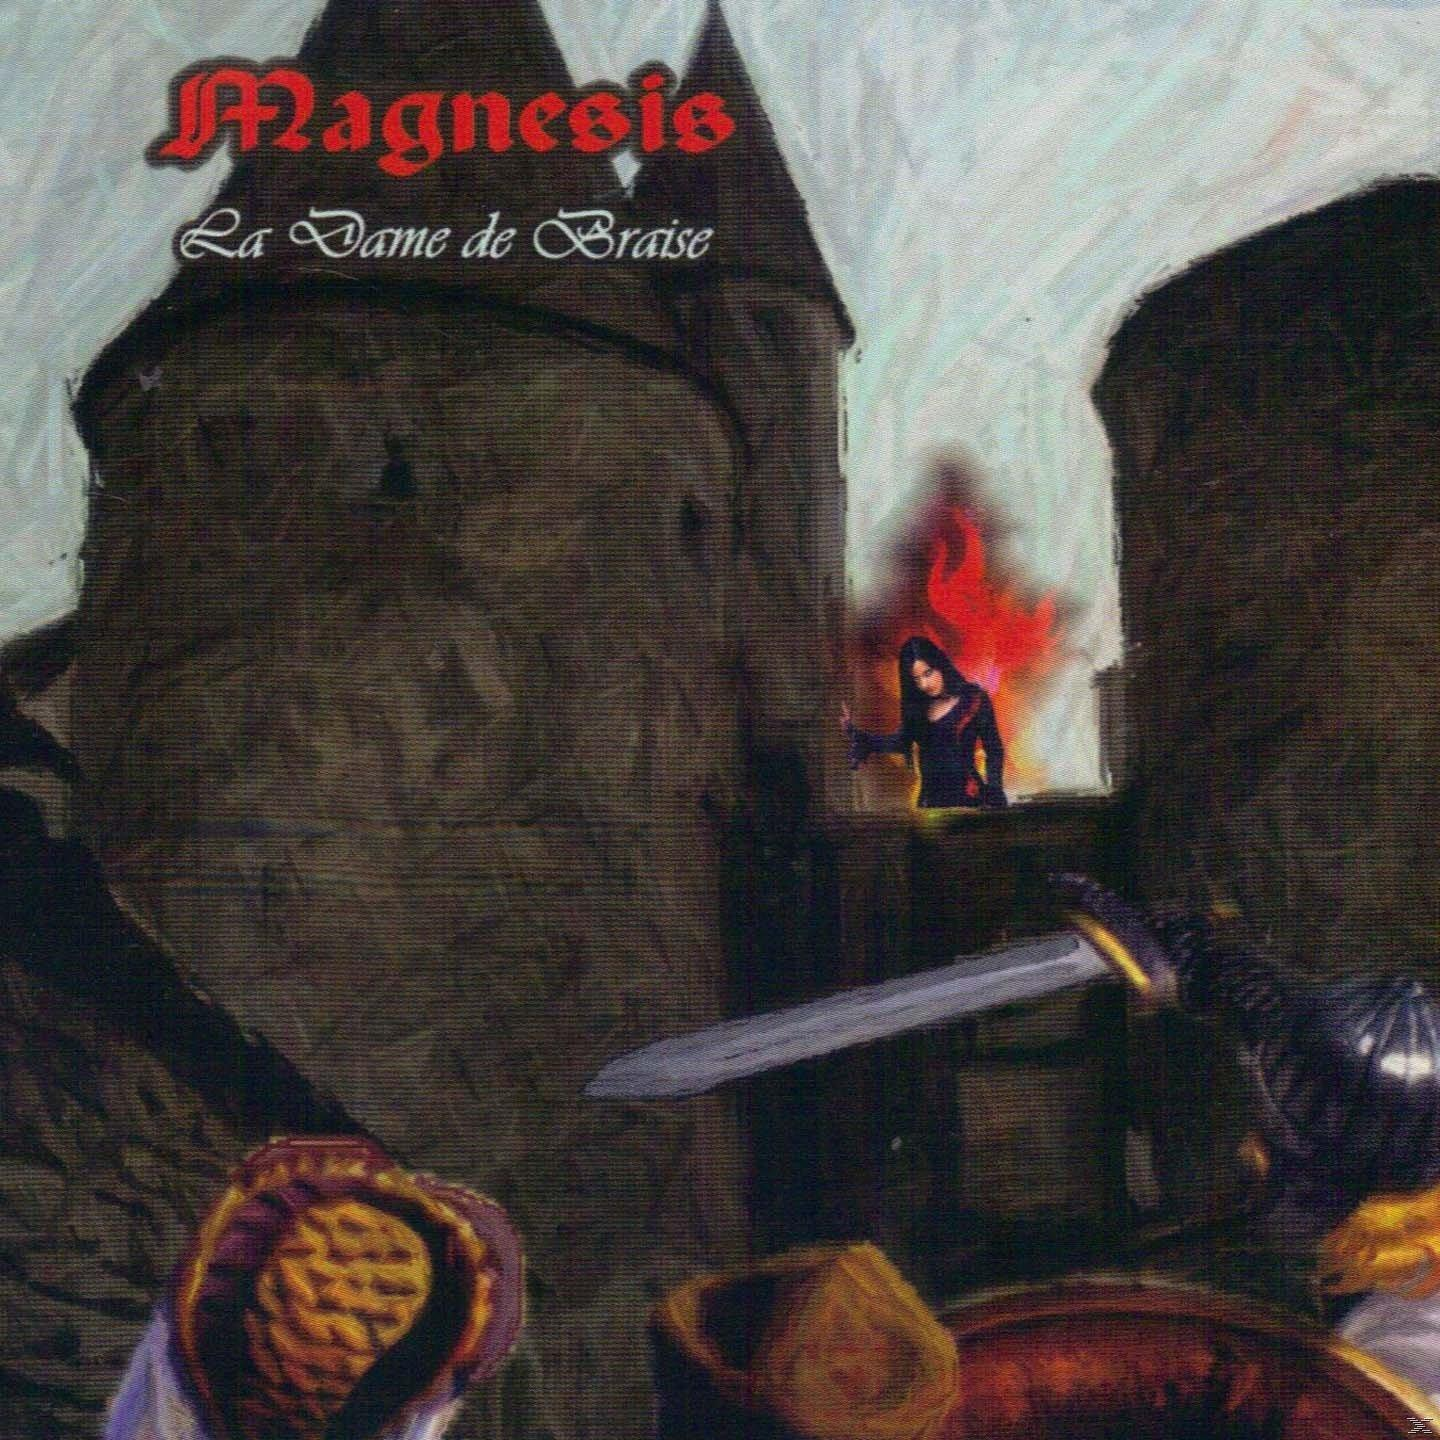 Magnesis - La Dame de - (CD) Braise